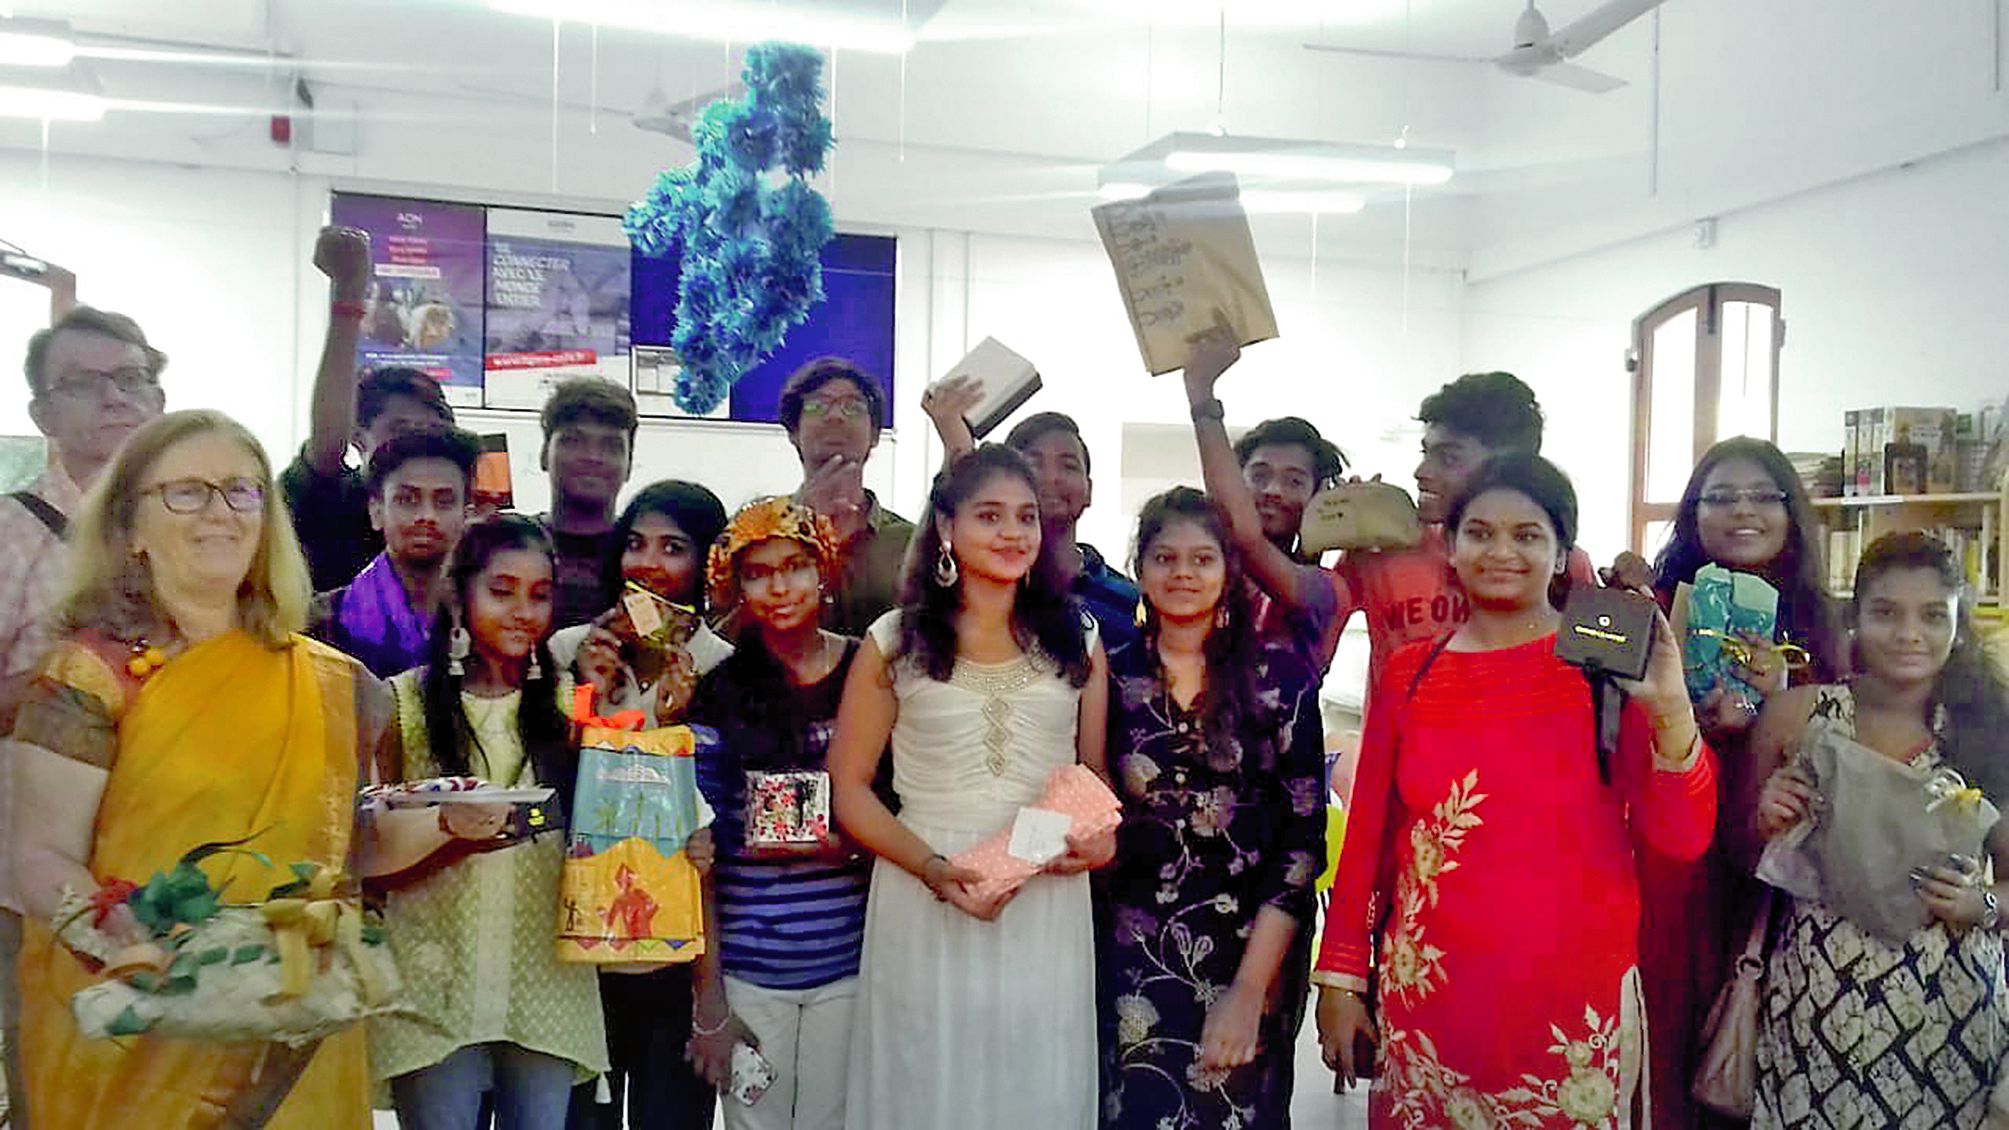 Les étudiants de Pondichéry ont reçu des cadeaux des jeunes Calédoniens grâce à des intermédiaires.Photo lycée français de Pondichéry